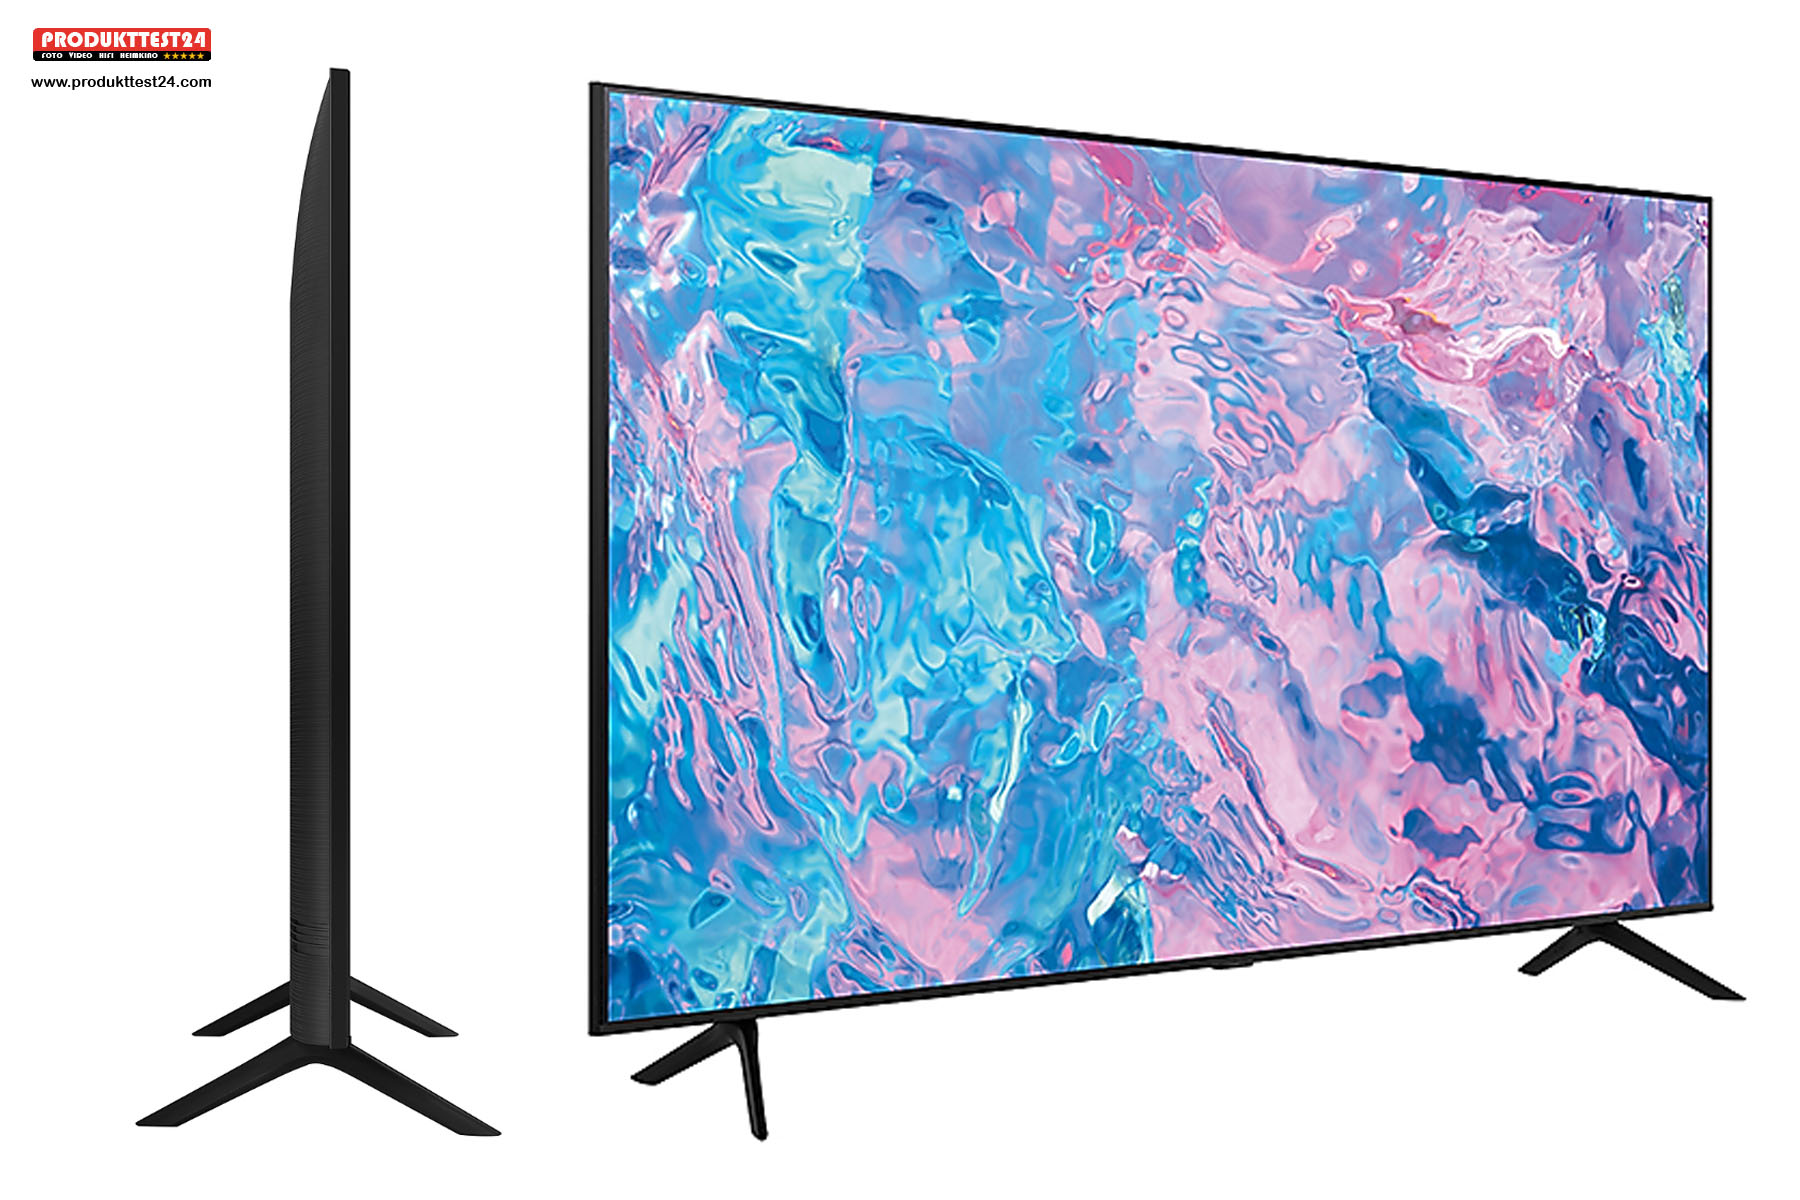 Der günstigste 4K-Fernseher von Samsung. Der Samsung GU55CU7179 mit 55 Zoll Bilddiagonale